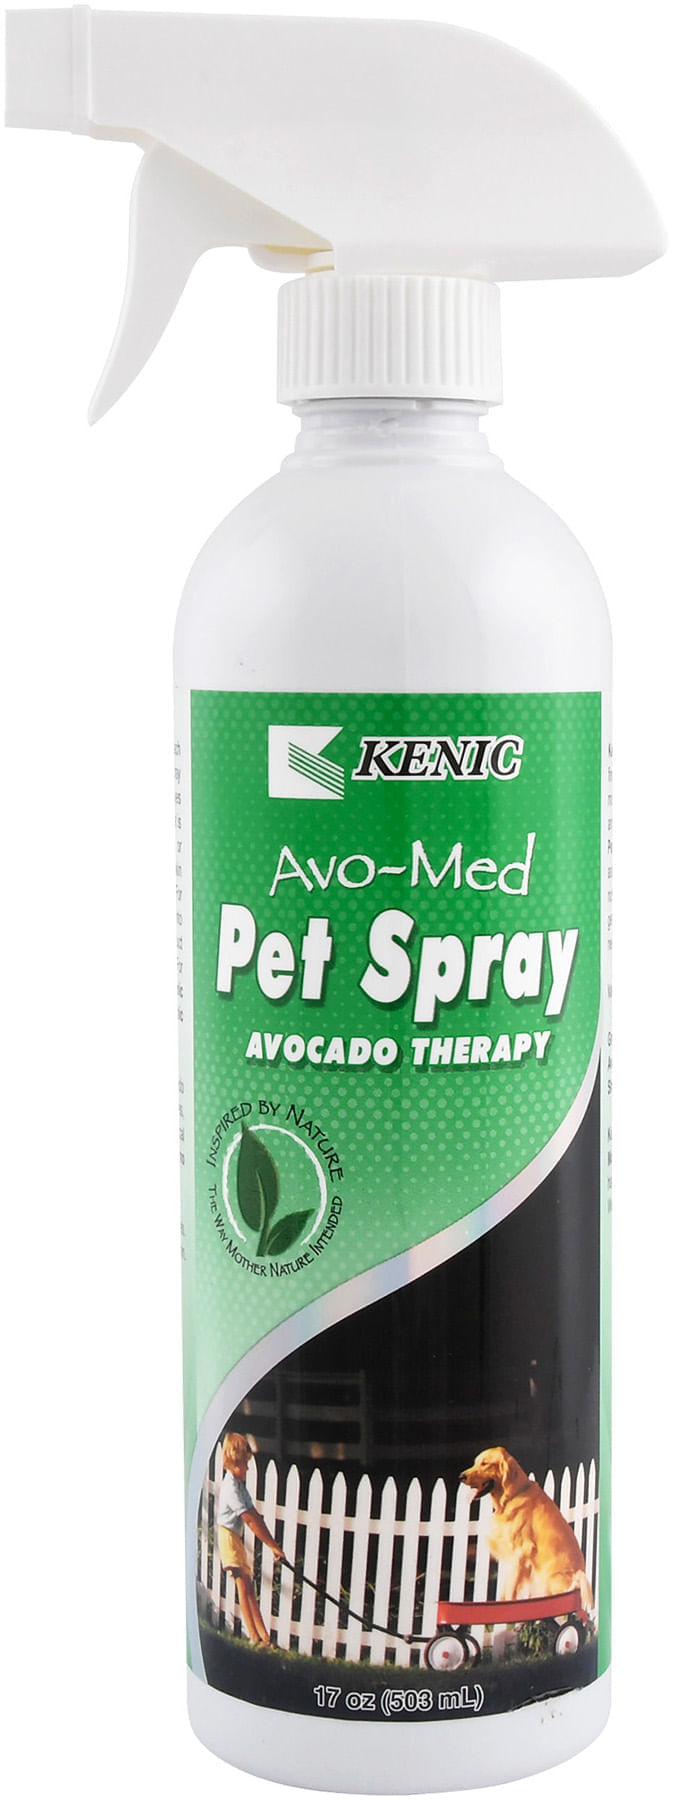 Avo-Med-Conditioning-Spray-17-oz